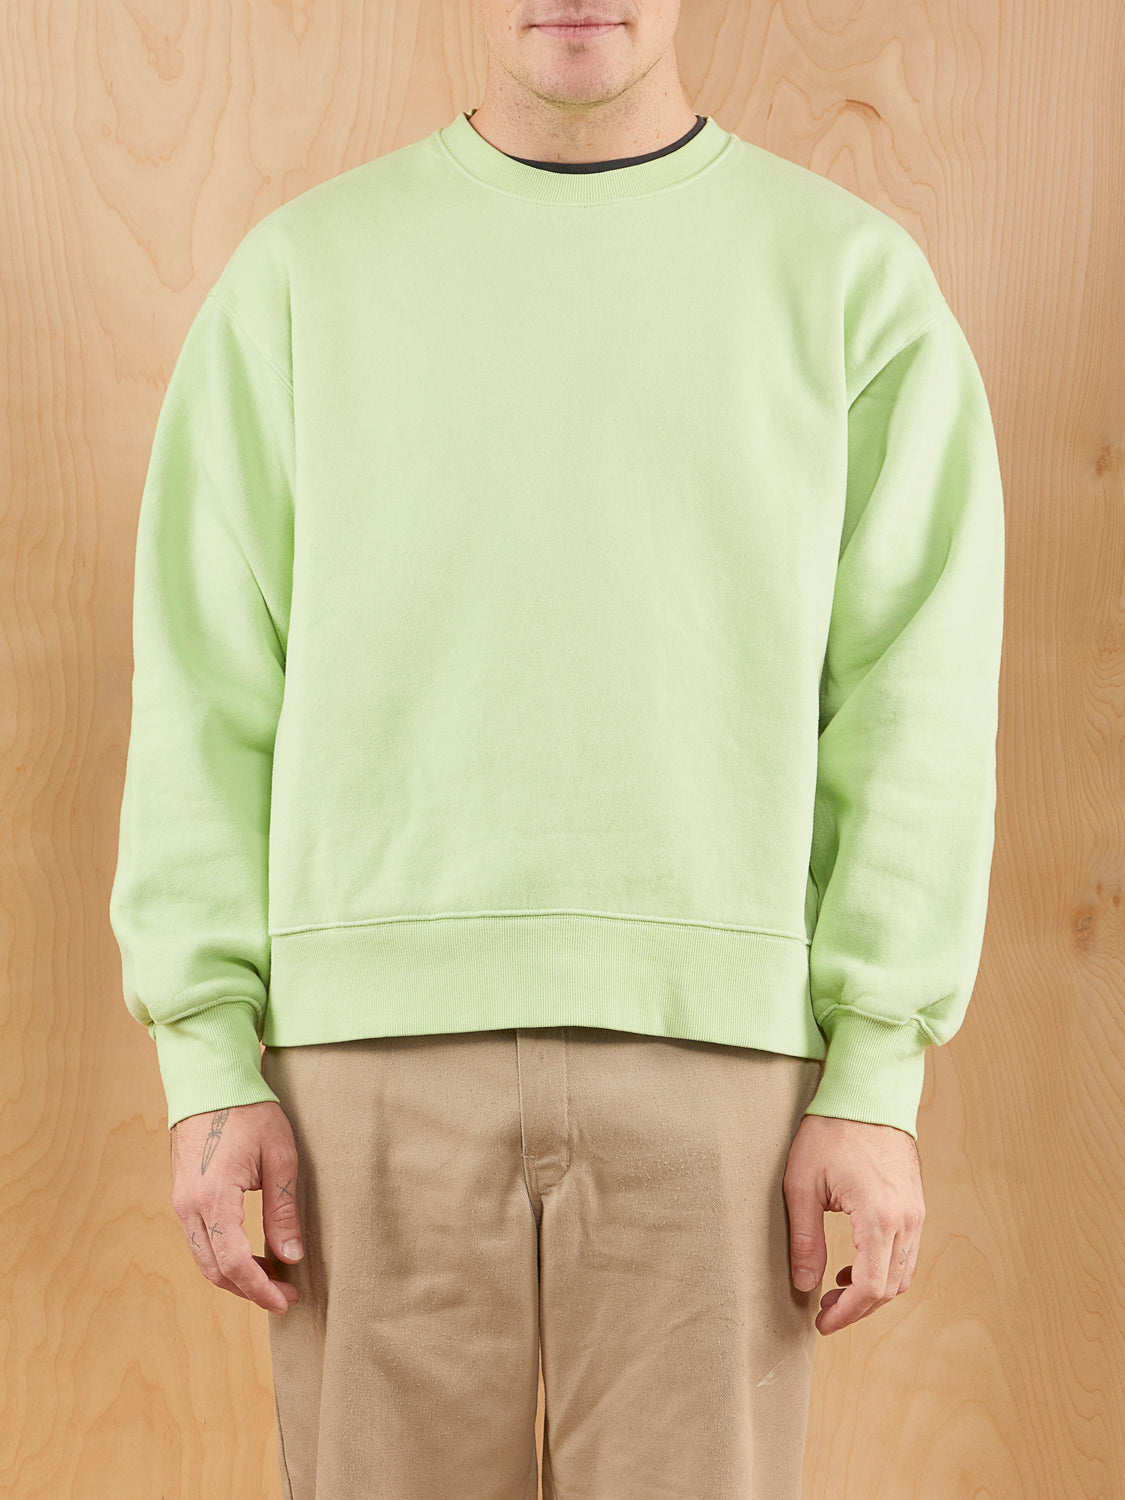 TNA Green Sweatshirt